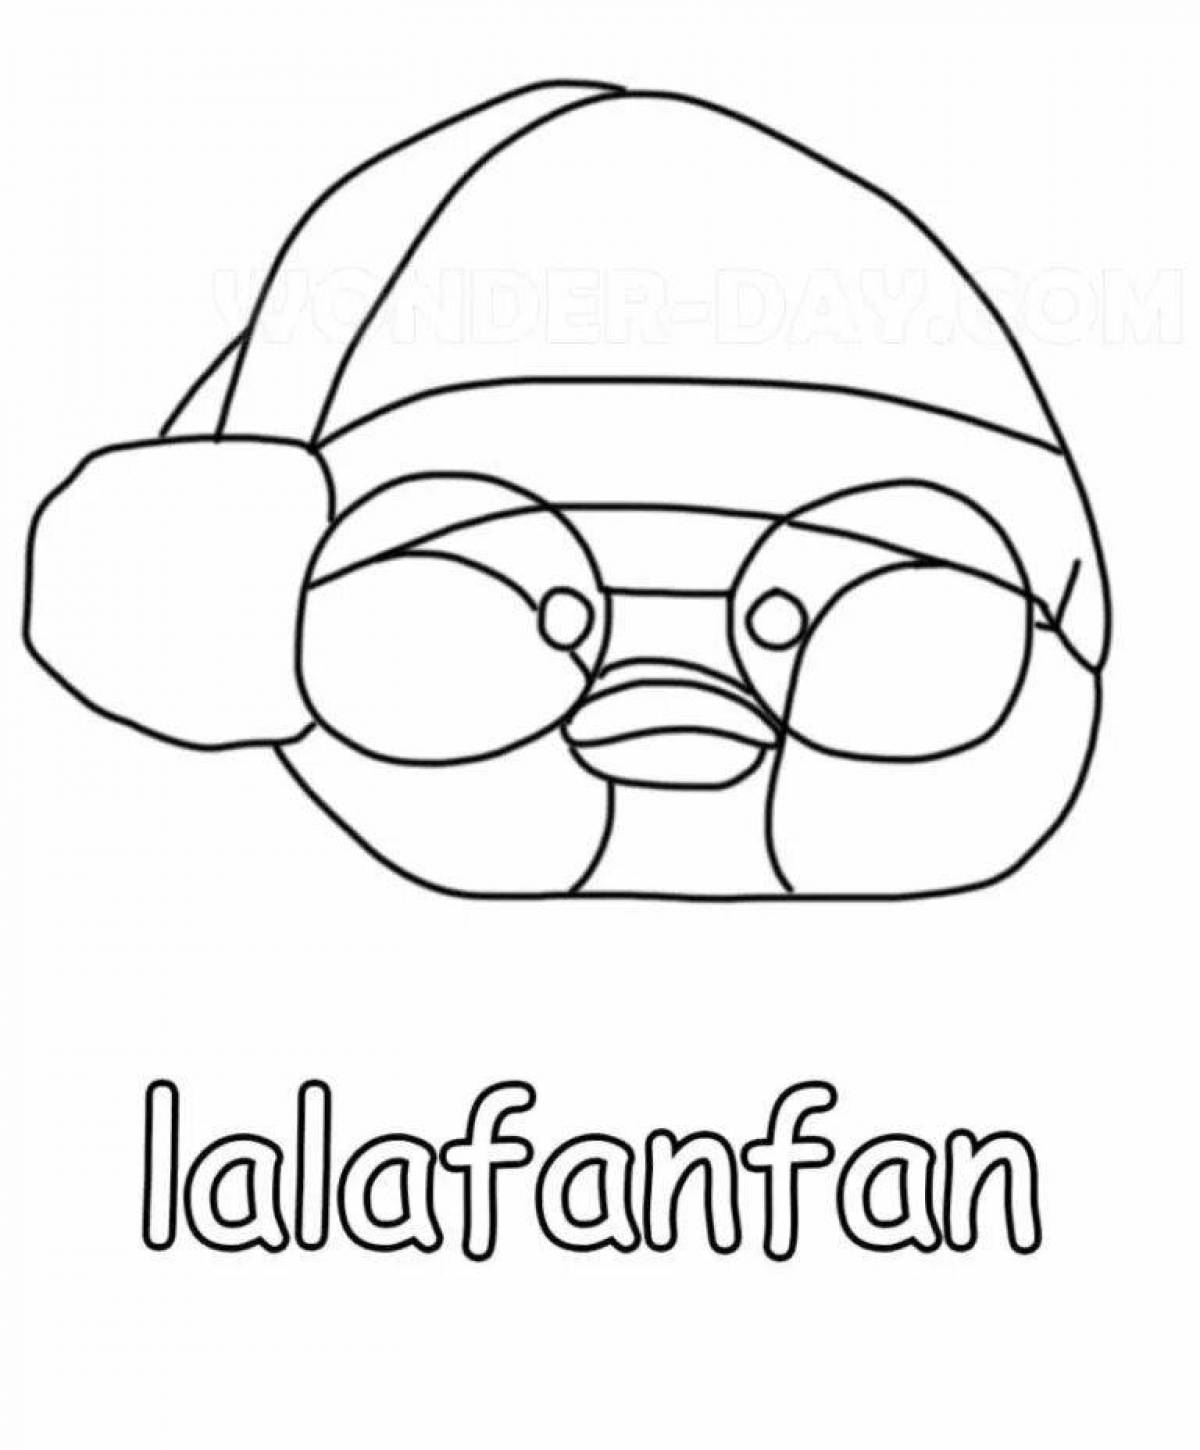 Lala fanfan#6